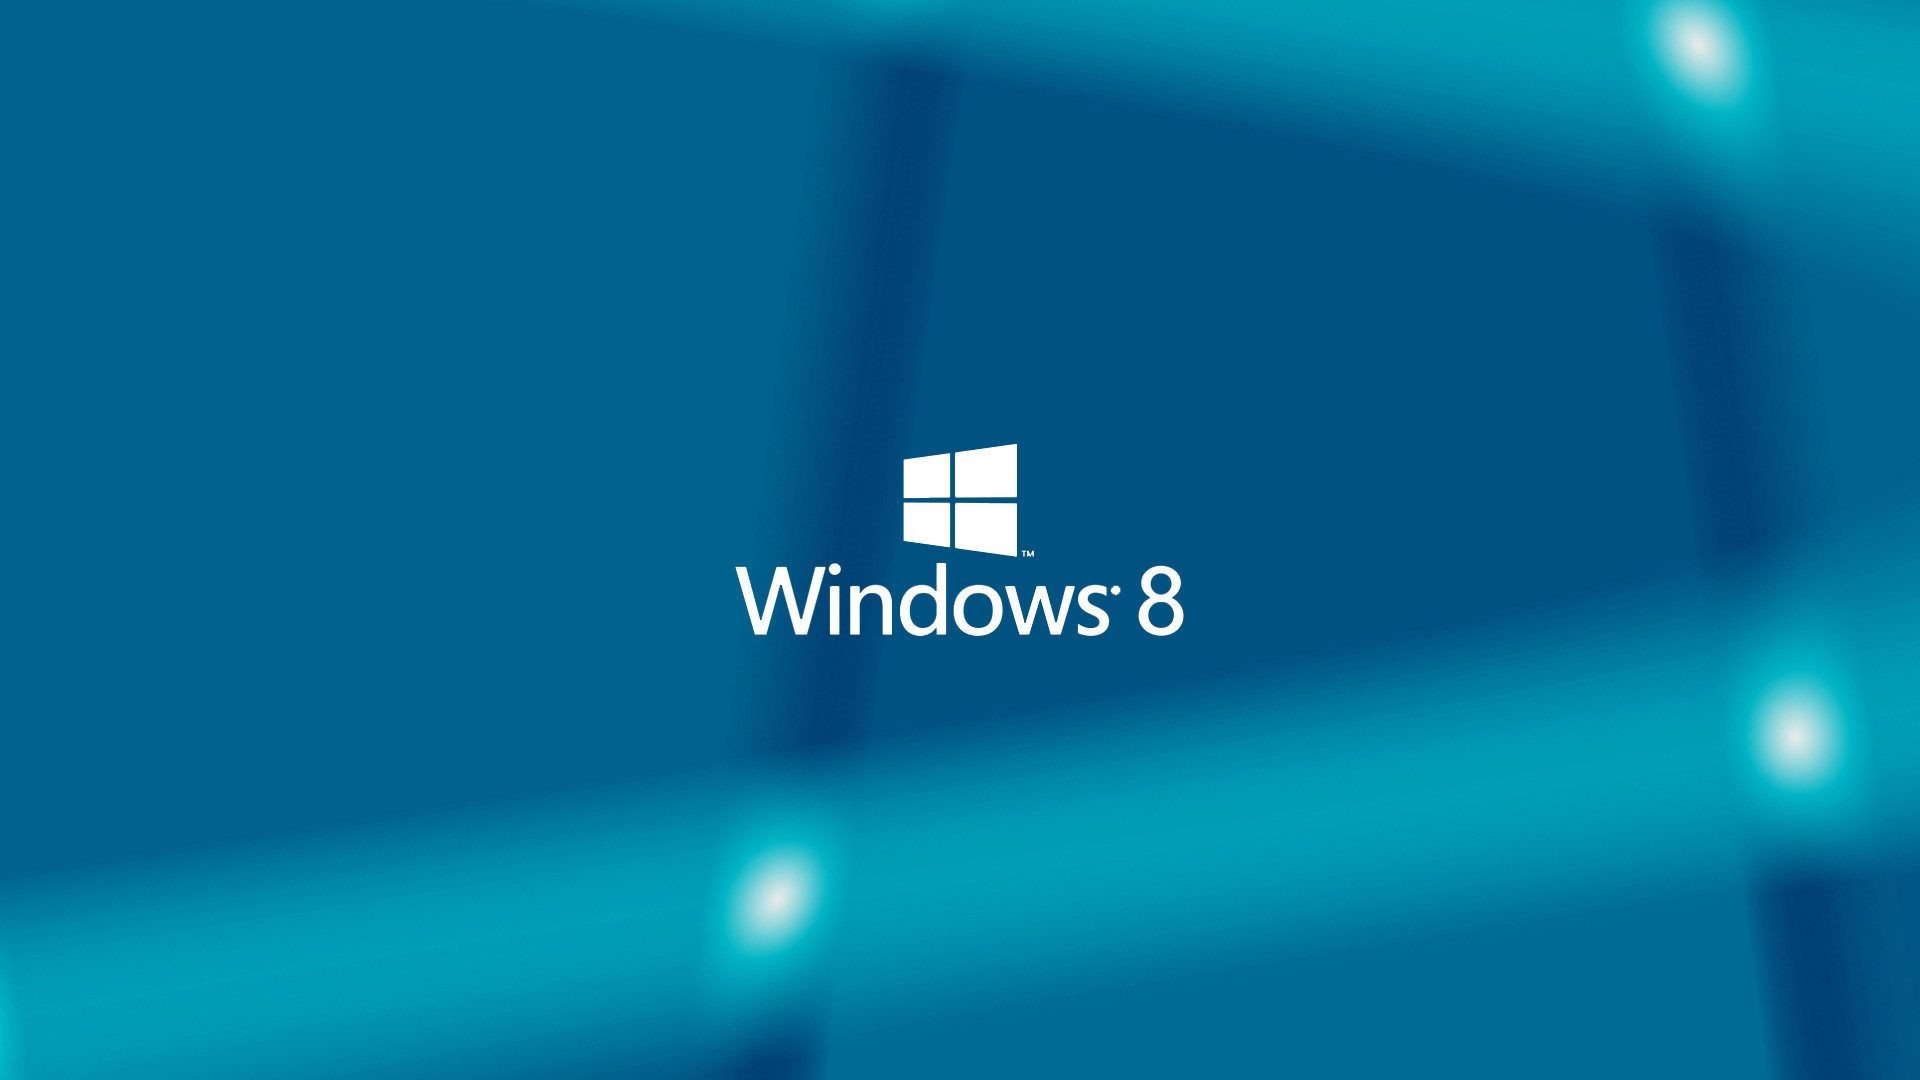 Windows 8 Wallpapers For Desktop – Download Here. TechBeasts